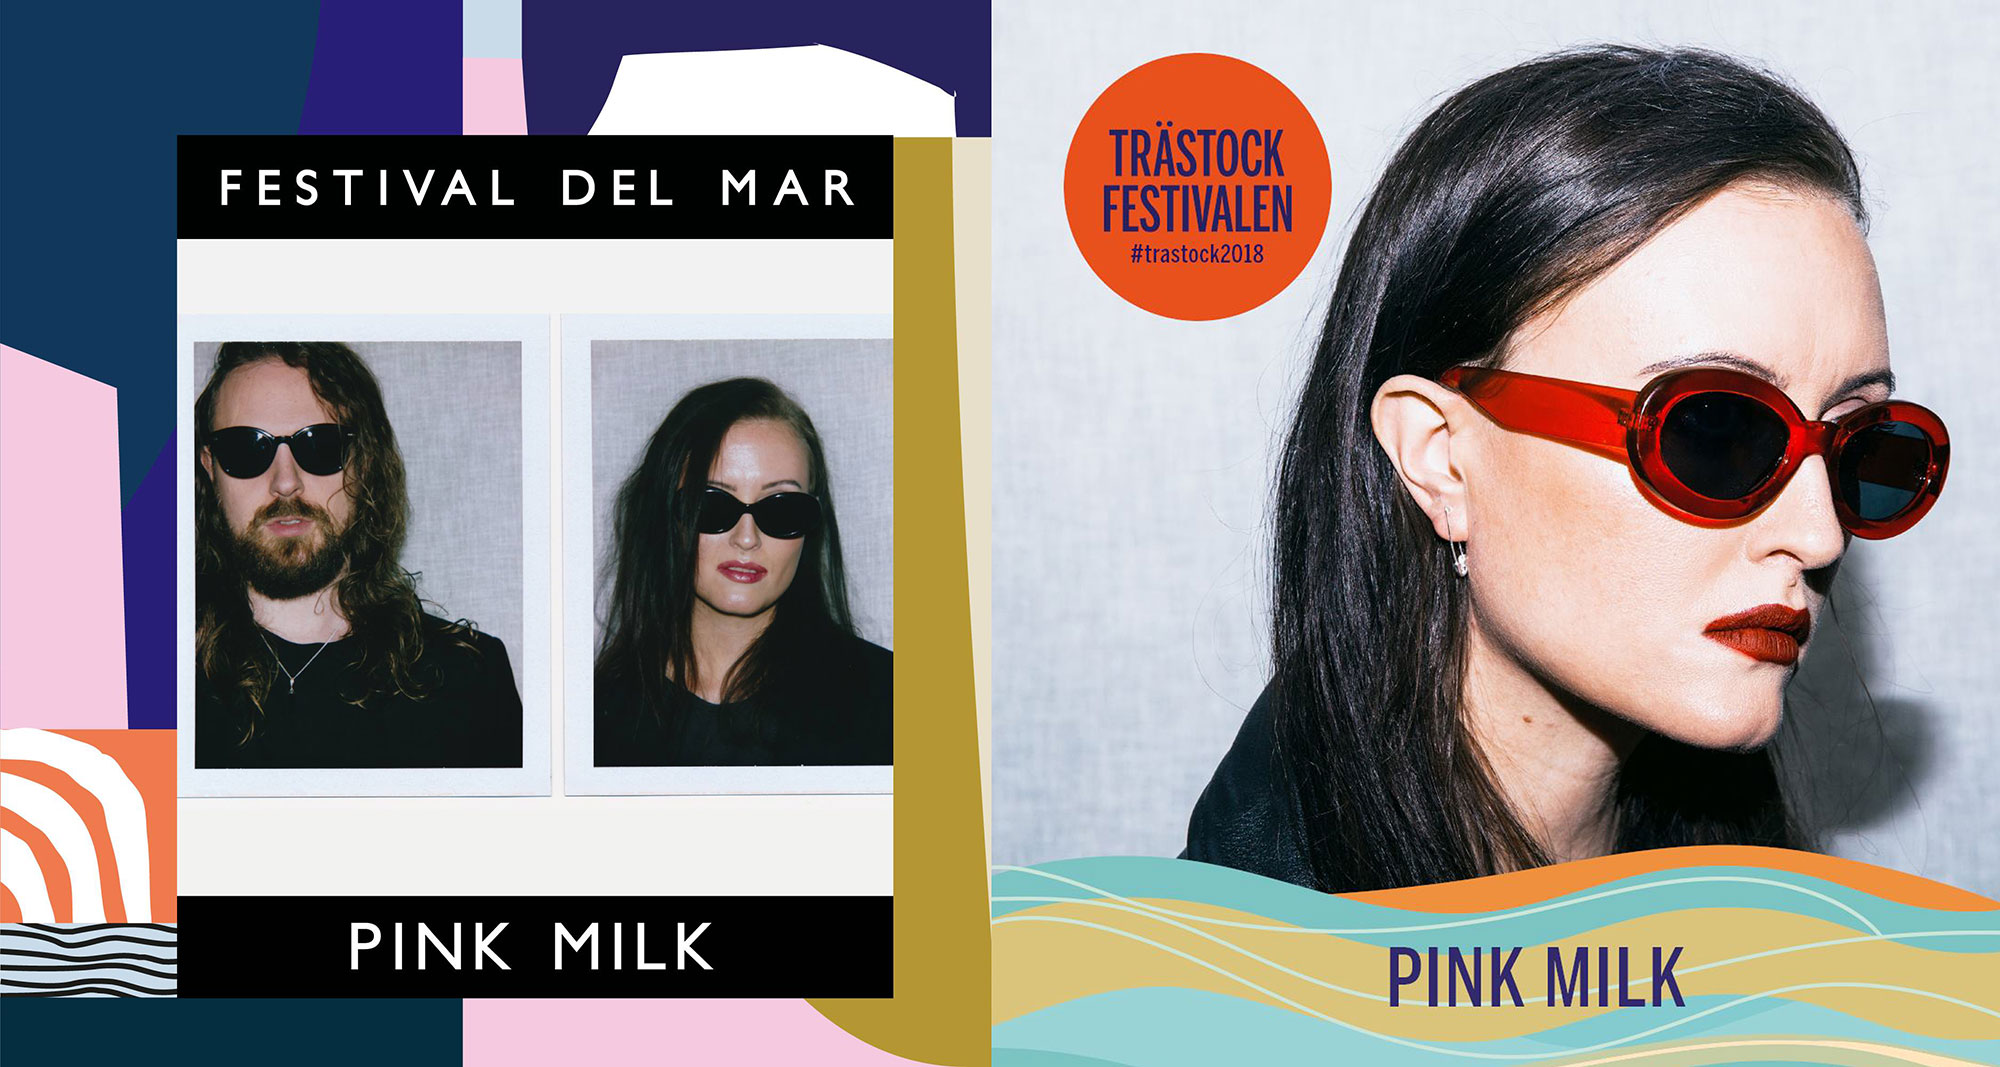 Pink Milk - Festival Del Mar, Trästock